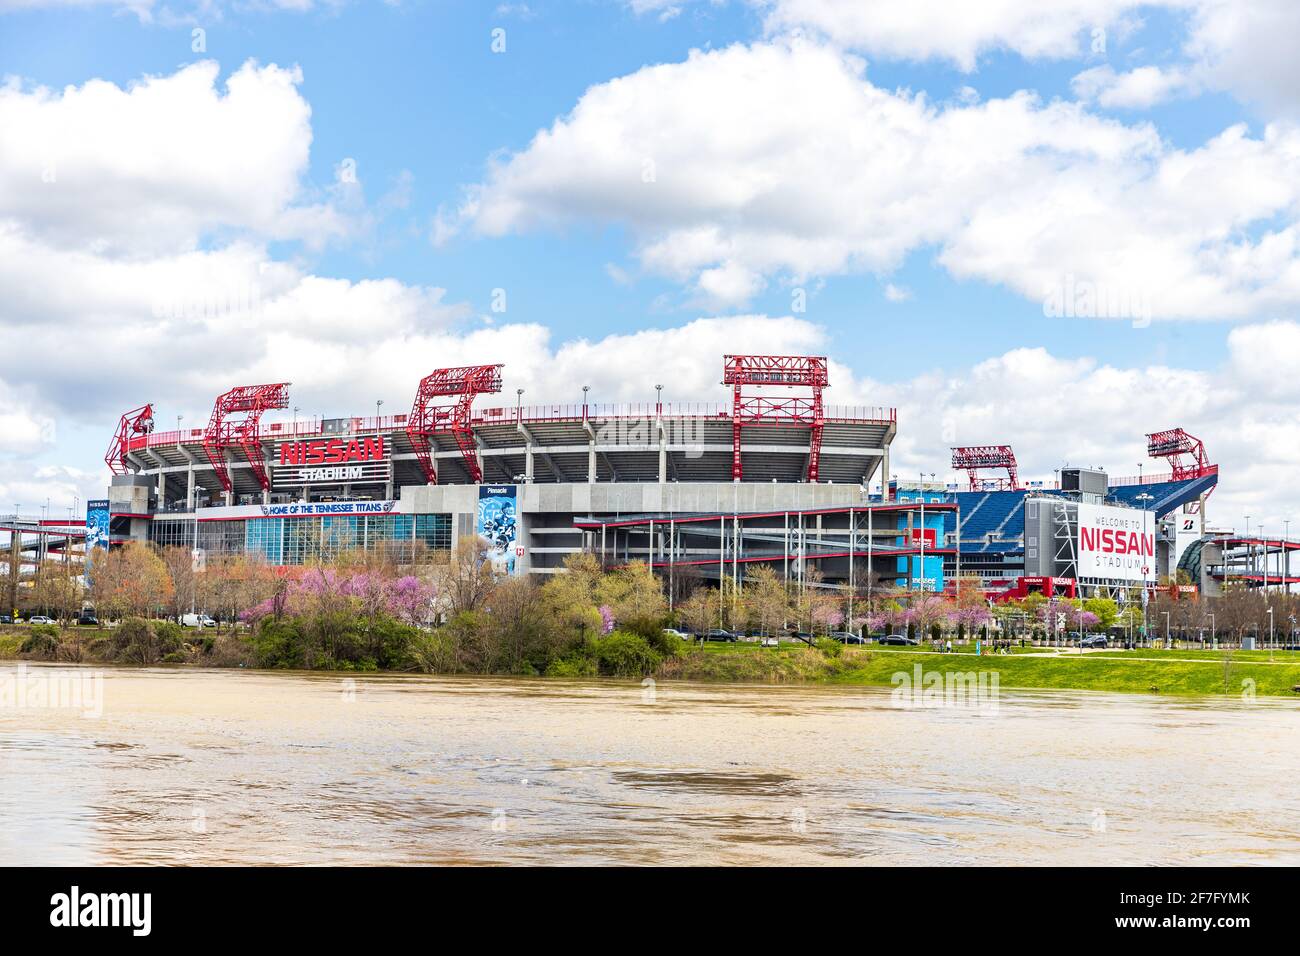 Le Nissan Stadium accueille principalement les Tennessee Titans de la NFL, mais accueille également d'autres matchs de football, des concerts et des événements. Banque D'Images